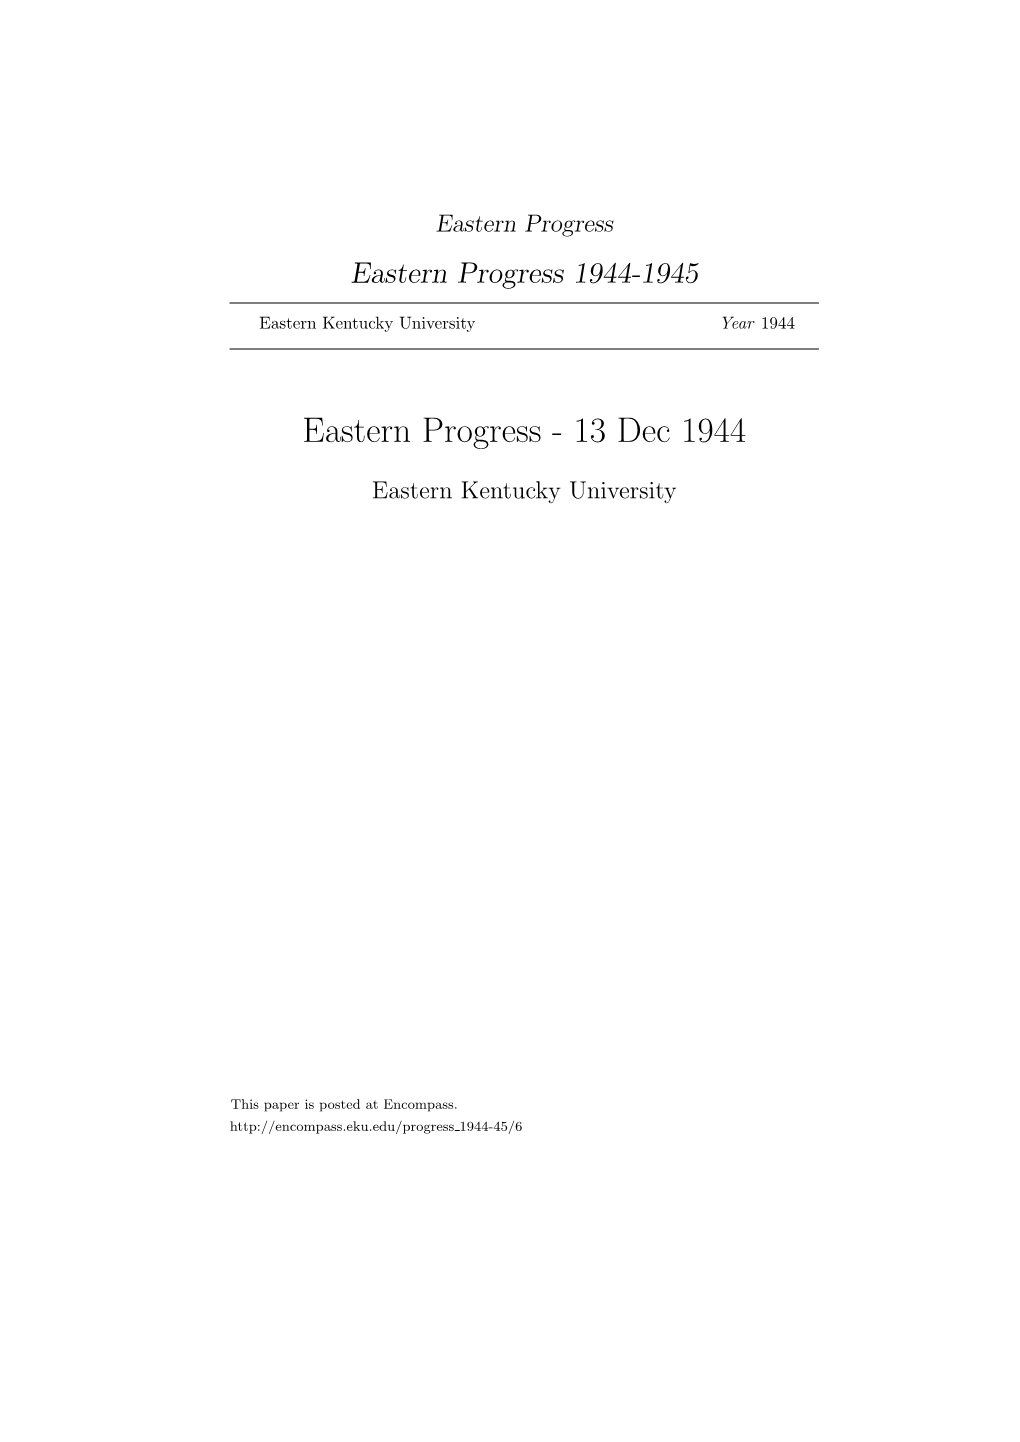 Eastern Progress Eastern Progress 1944-1945